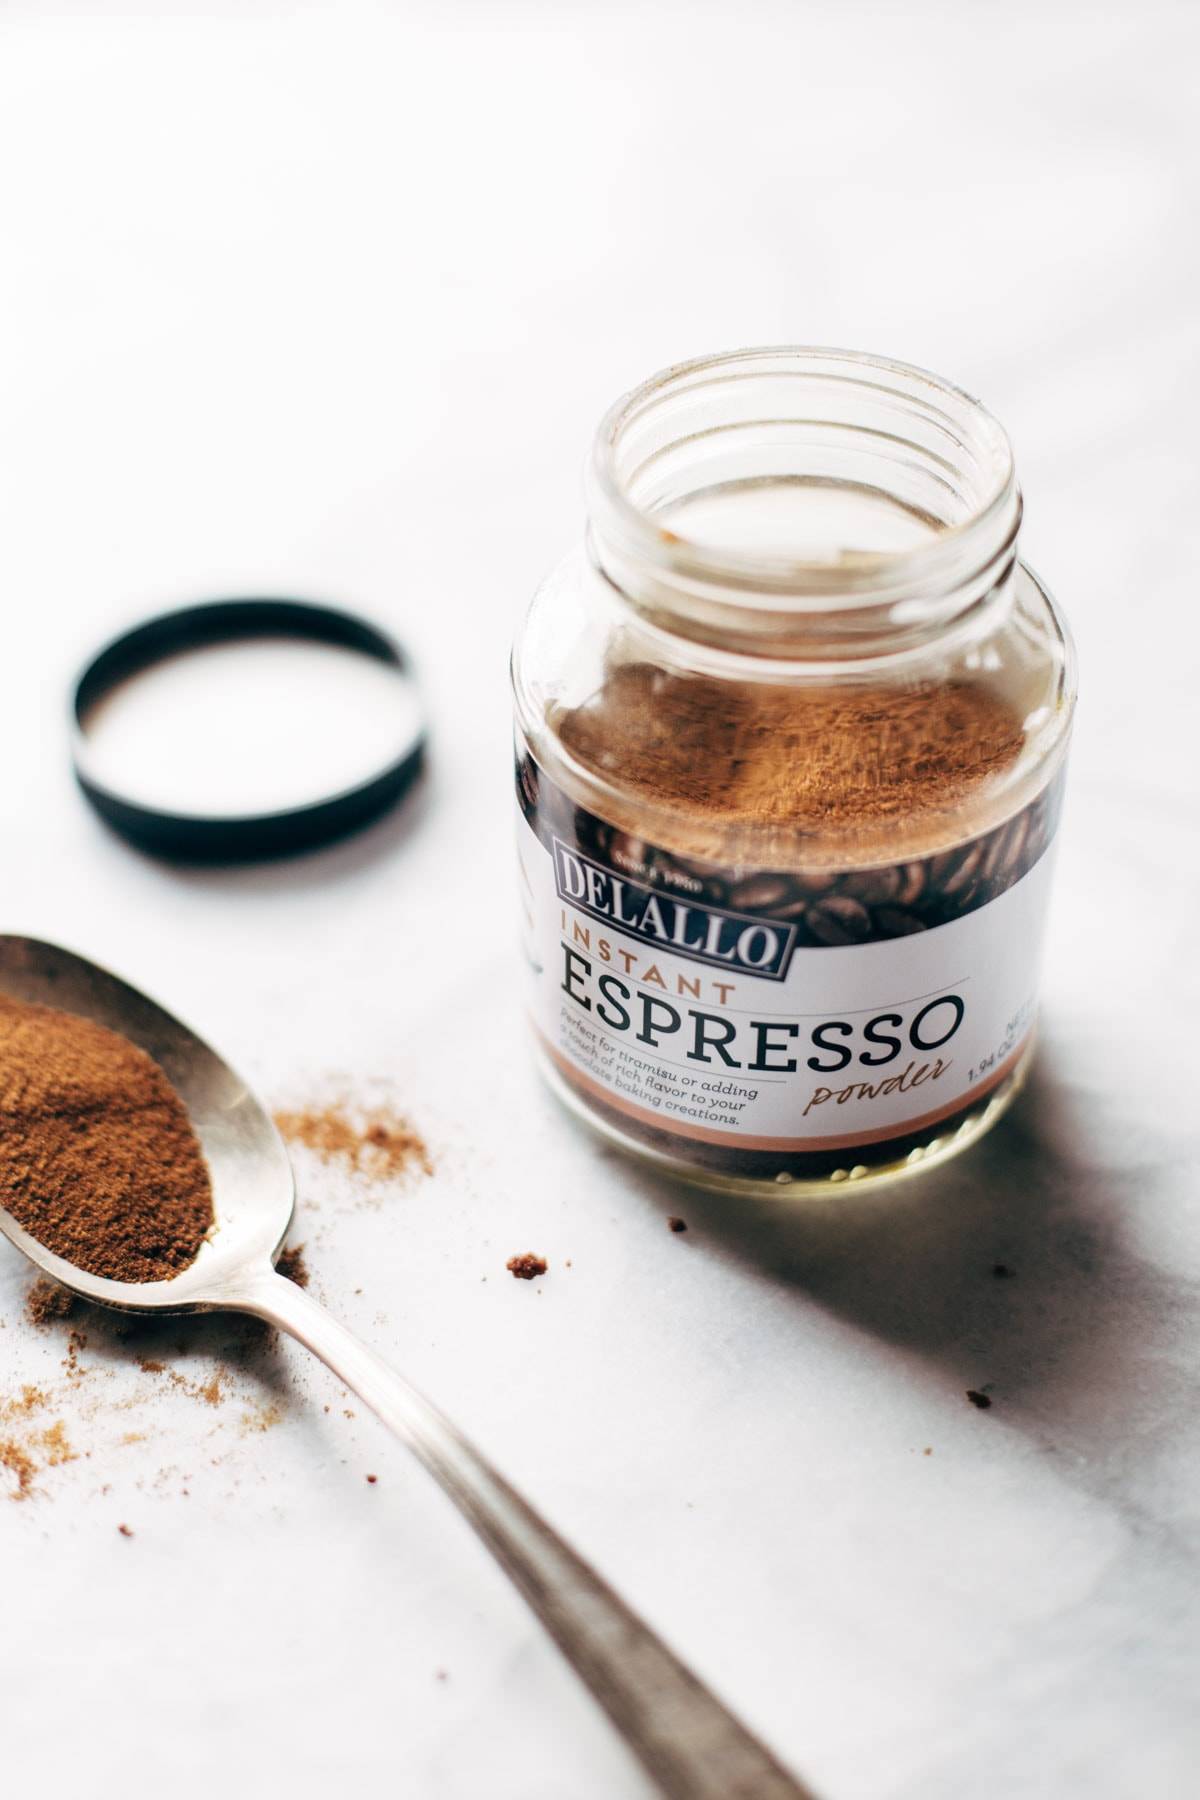 DeLallo espresso in a jar with a spoon.